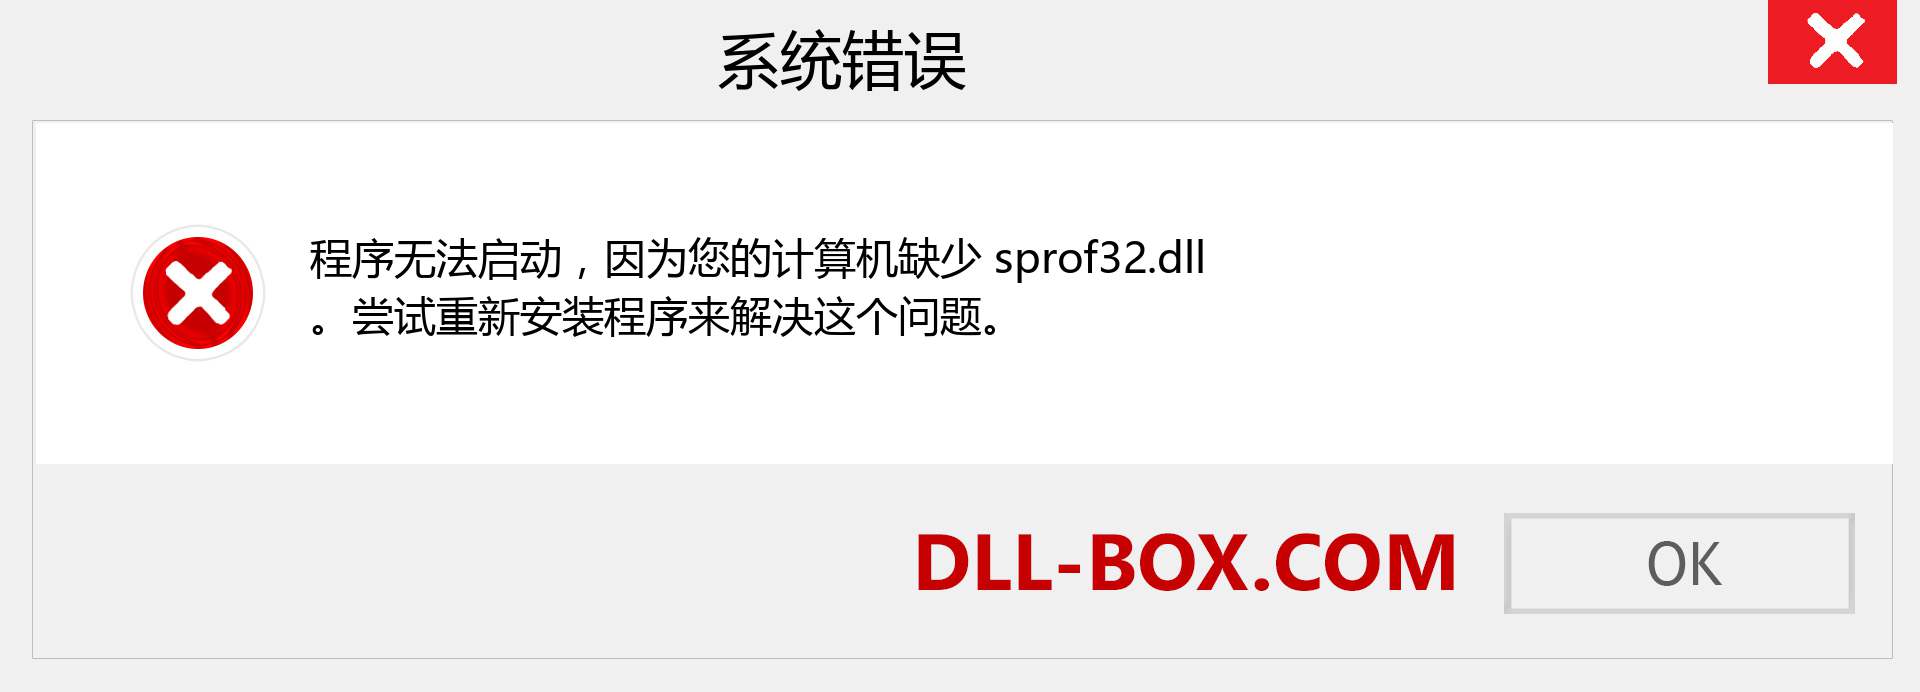 sprof32.dll 文件丢失？。 适用于 Windows 7、8、10 的下载 - 修复 Windows、照片、图像上的 sprof32 dll 丢失错误